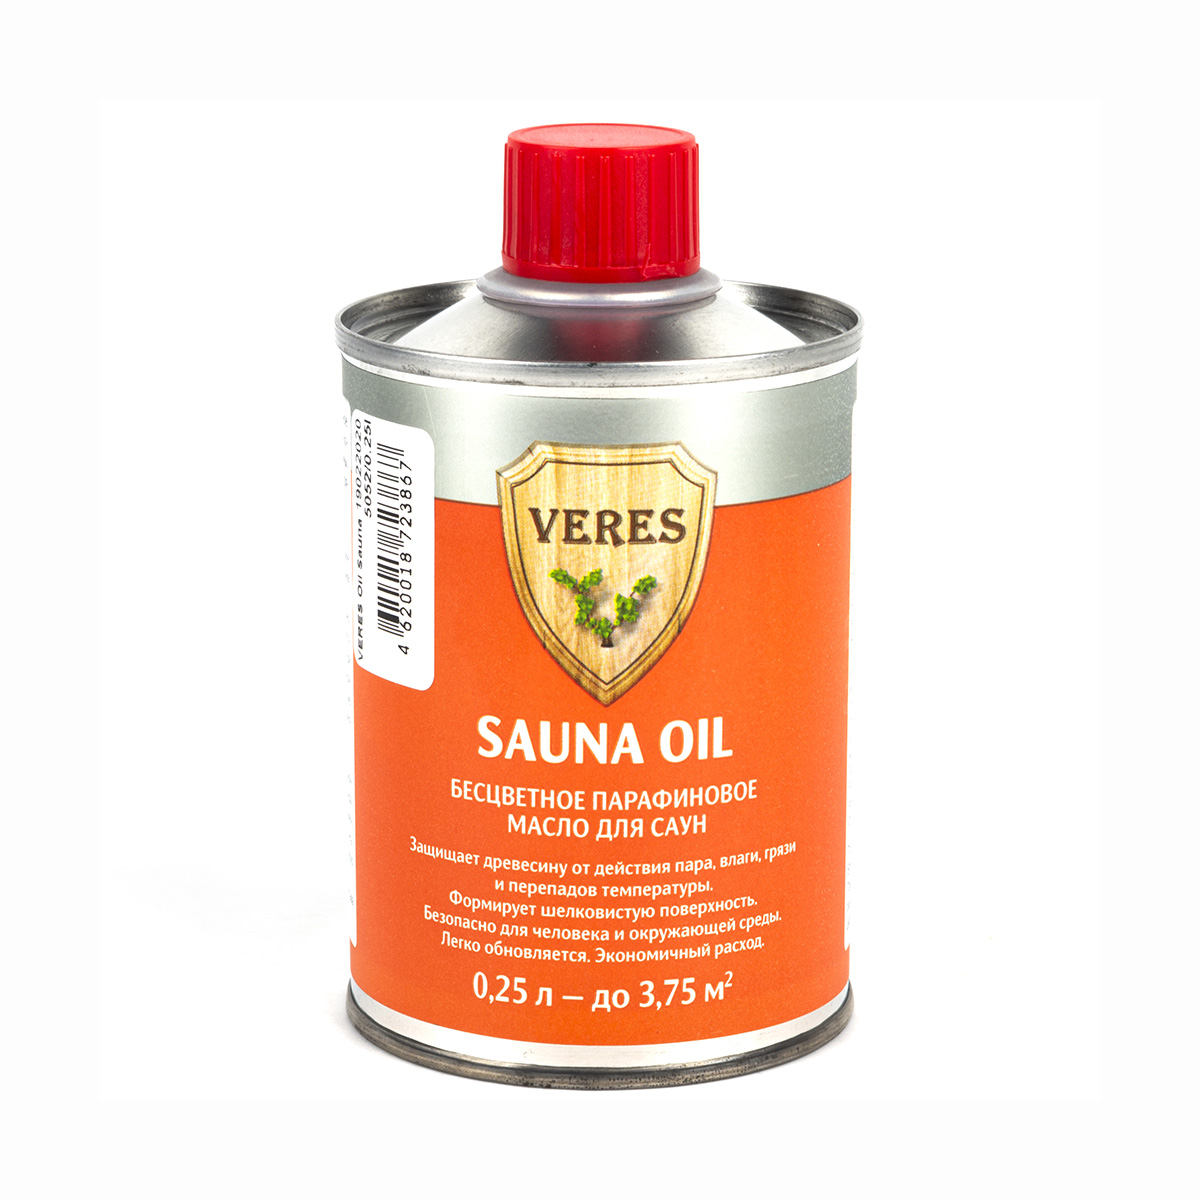 Верес масло для саун  "sauna oil"  0,25 л (1/6) "veres"